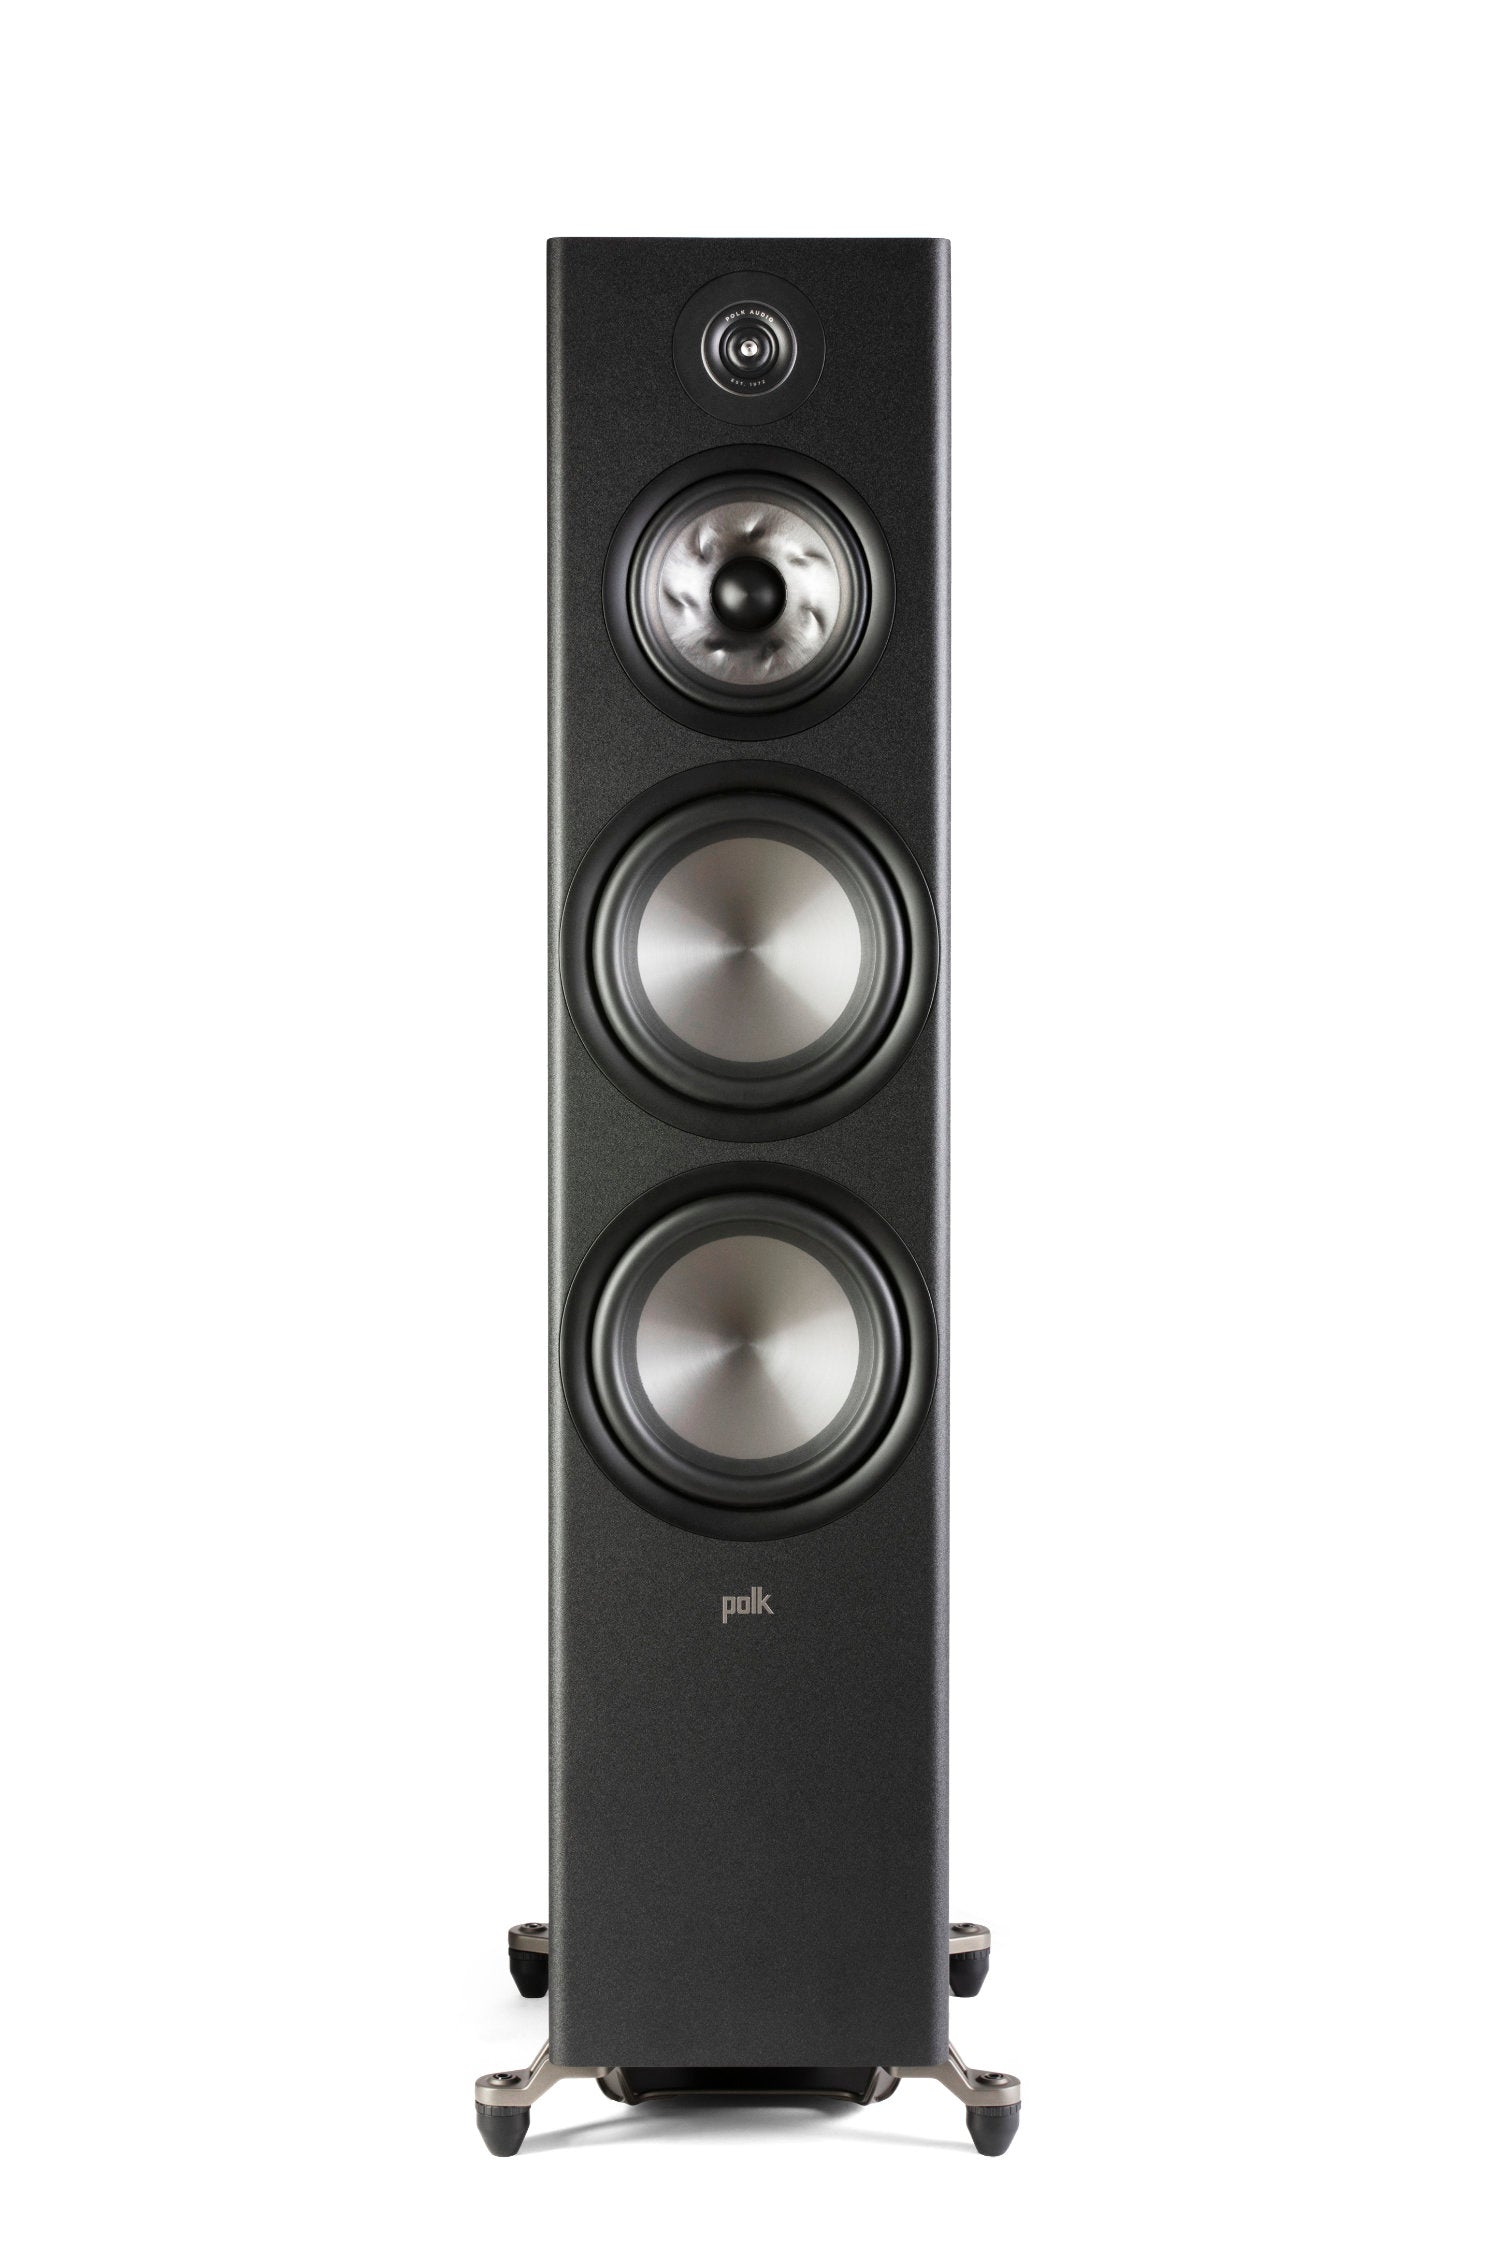 Polk Audio Reserve R700 pair of floorstanding speakers